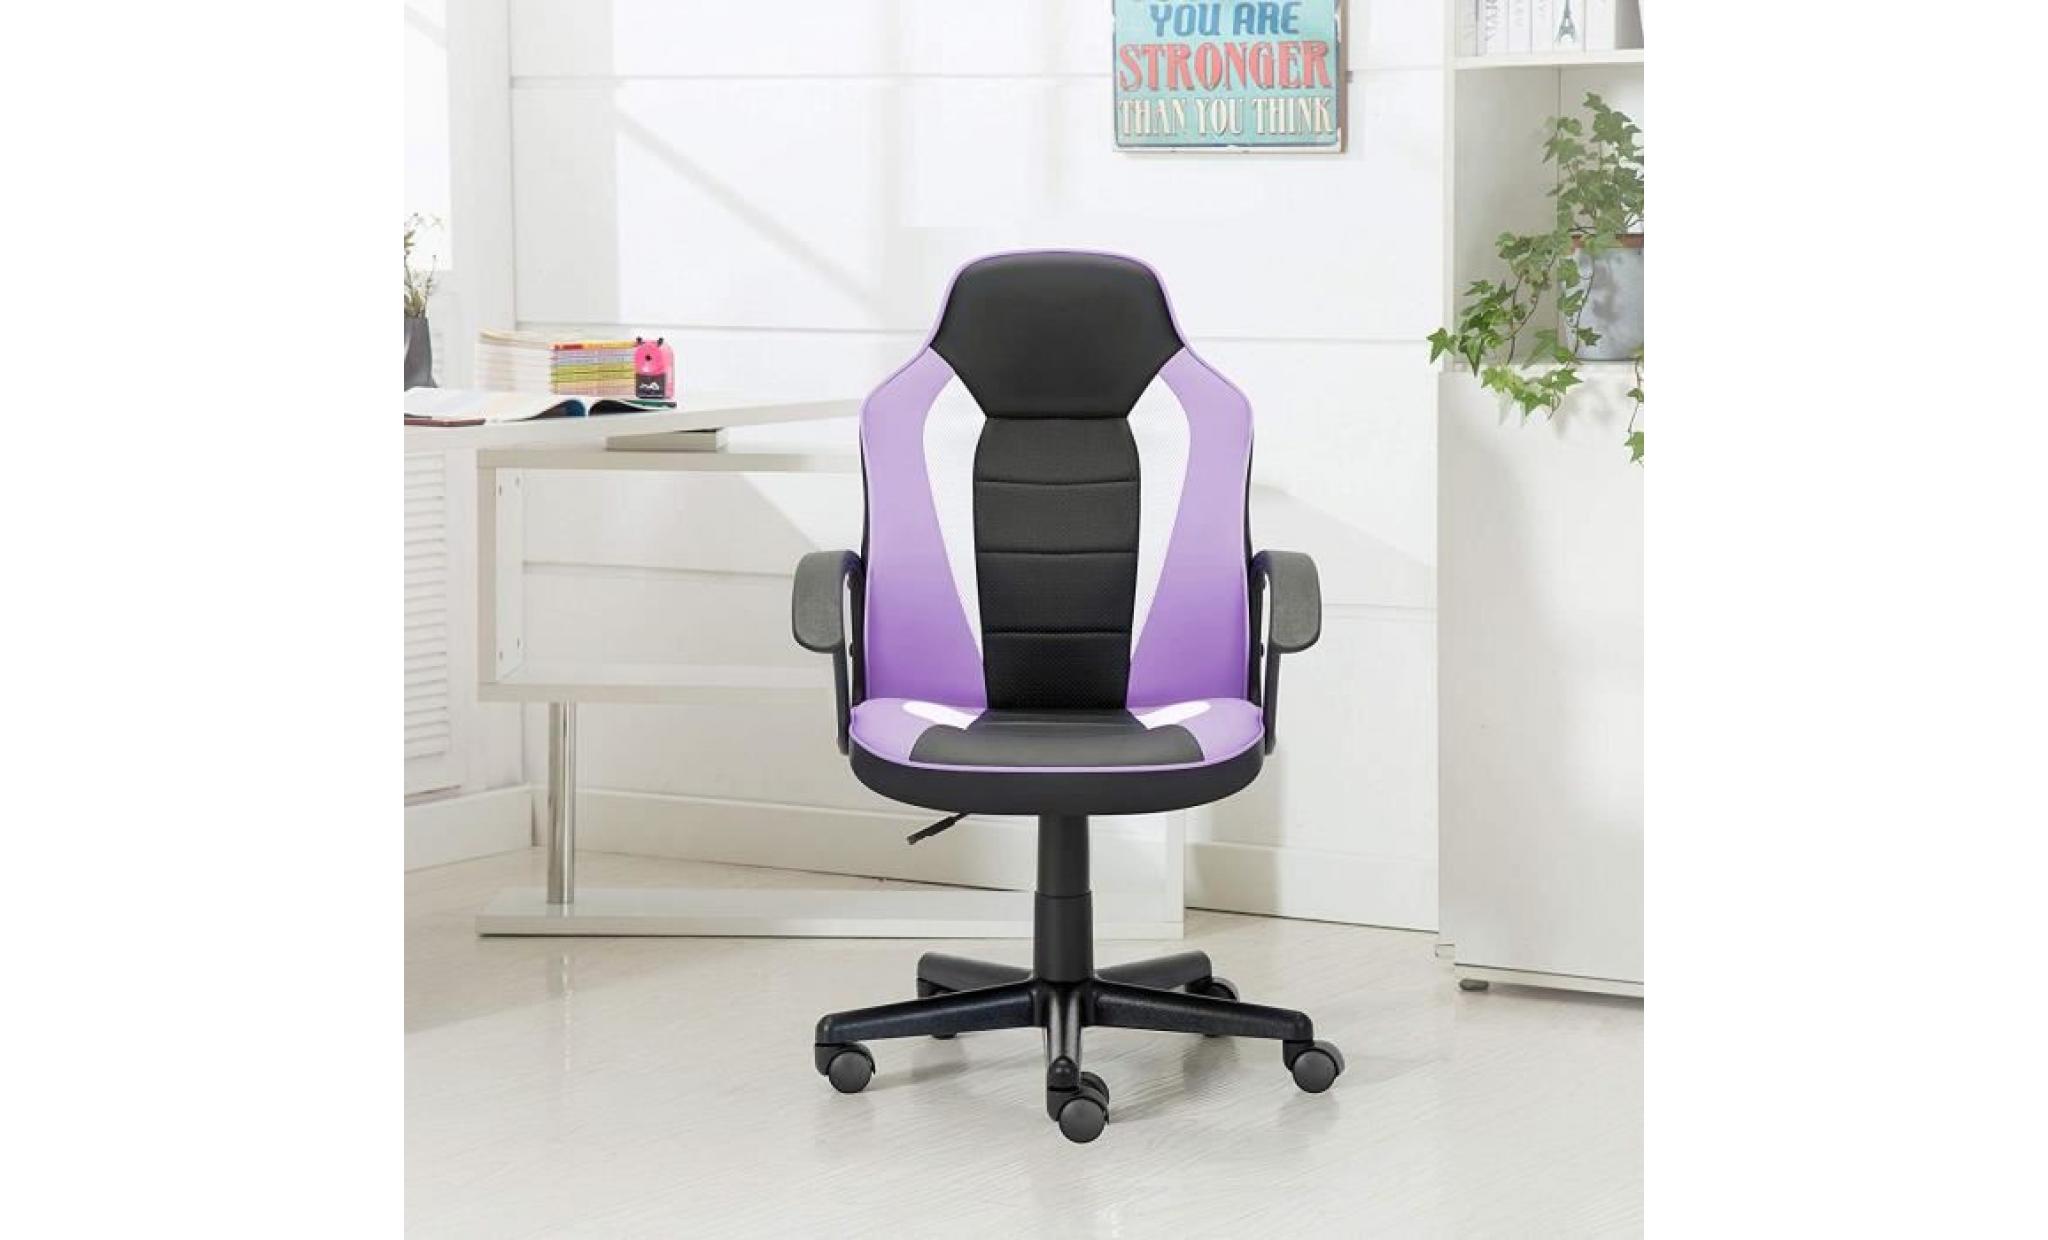 chaise de bureau pour enfant   siège etudiant   fauteuil de bureau réglable   violet   intimate wm heart